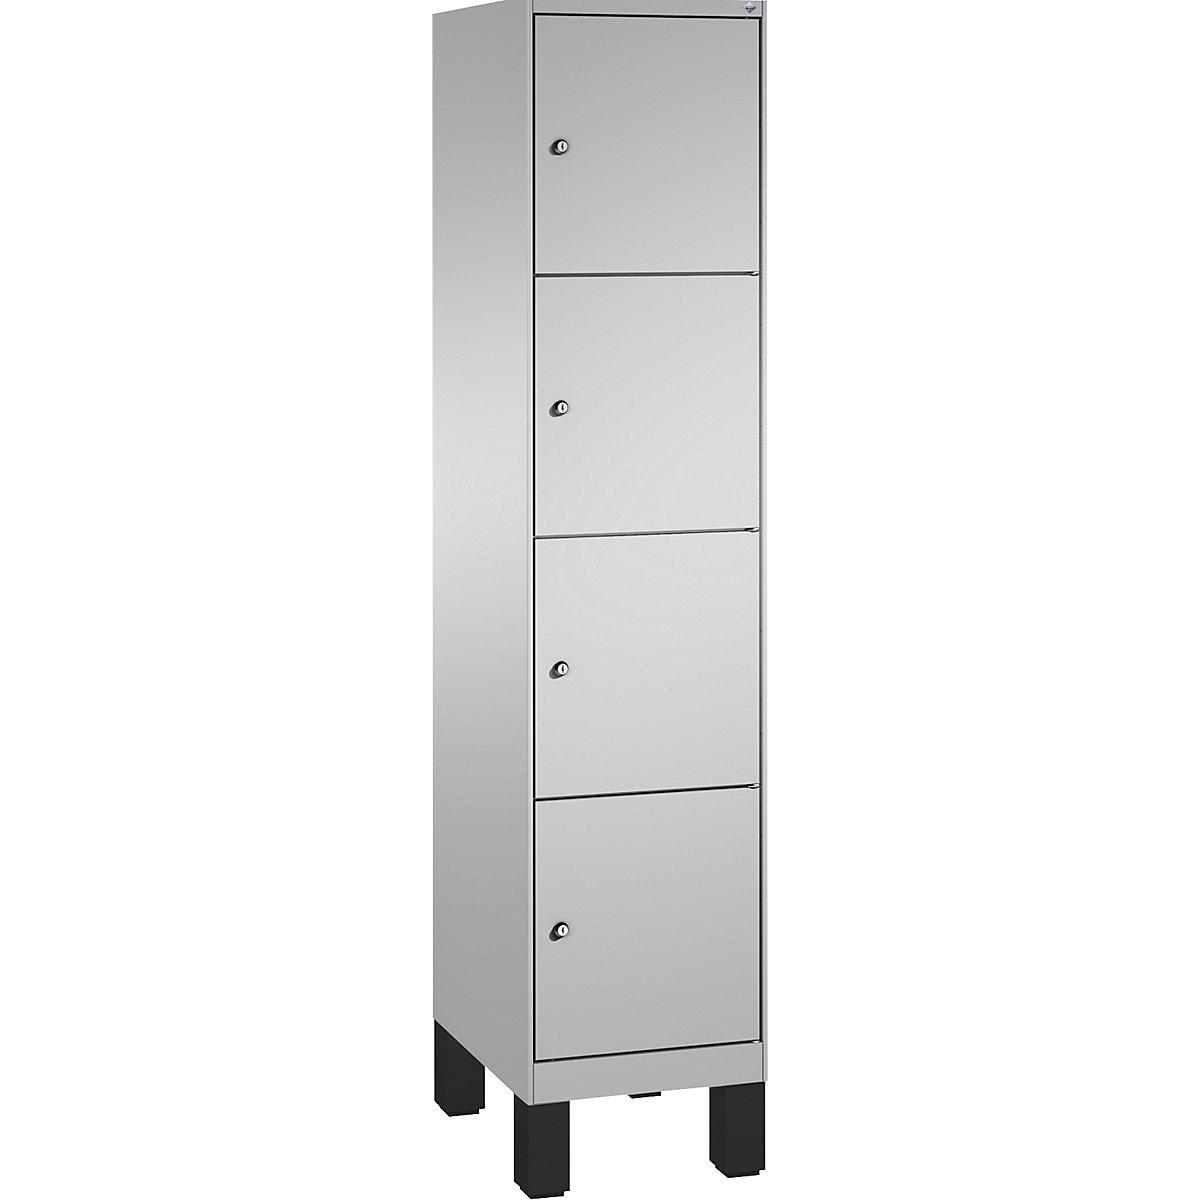 Armoire à casiers sur pieds EVOLO – C+P, 1 compartiment, 4 casiers, largeur compartiment 400 mm, aluminium / aluminium-12